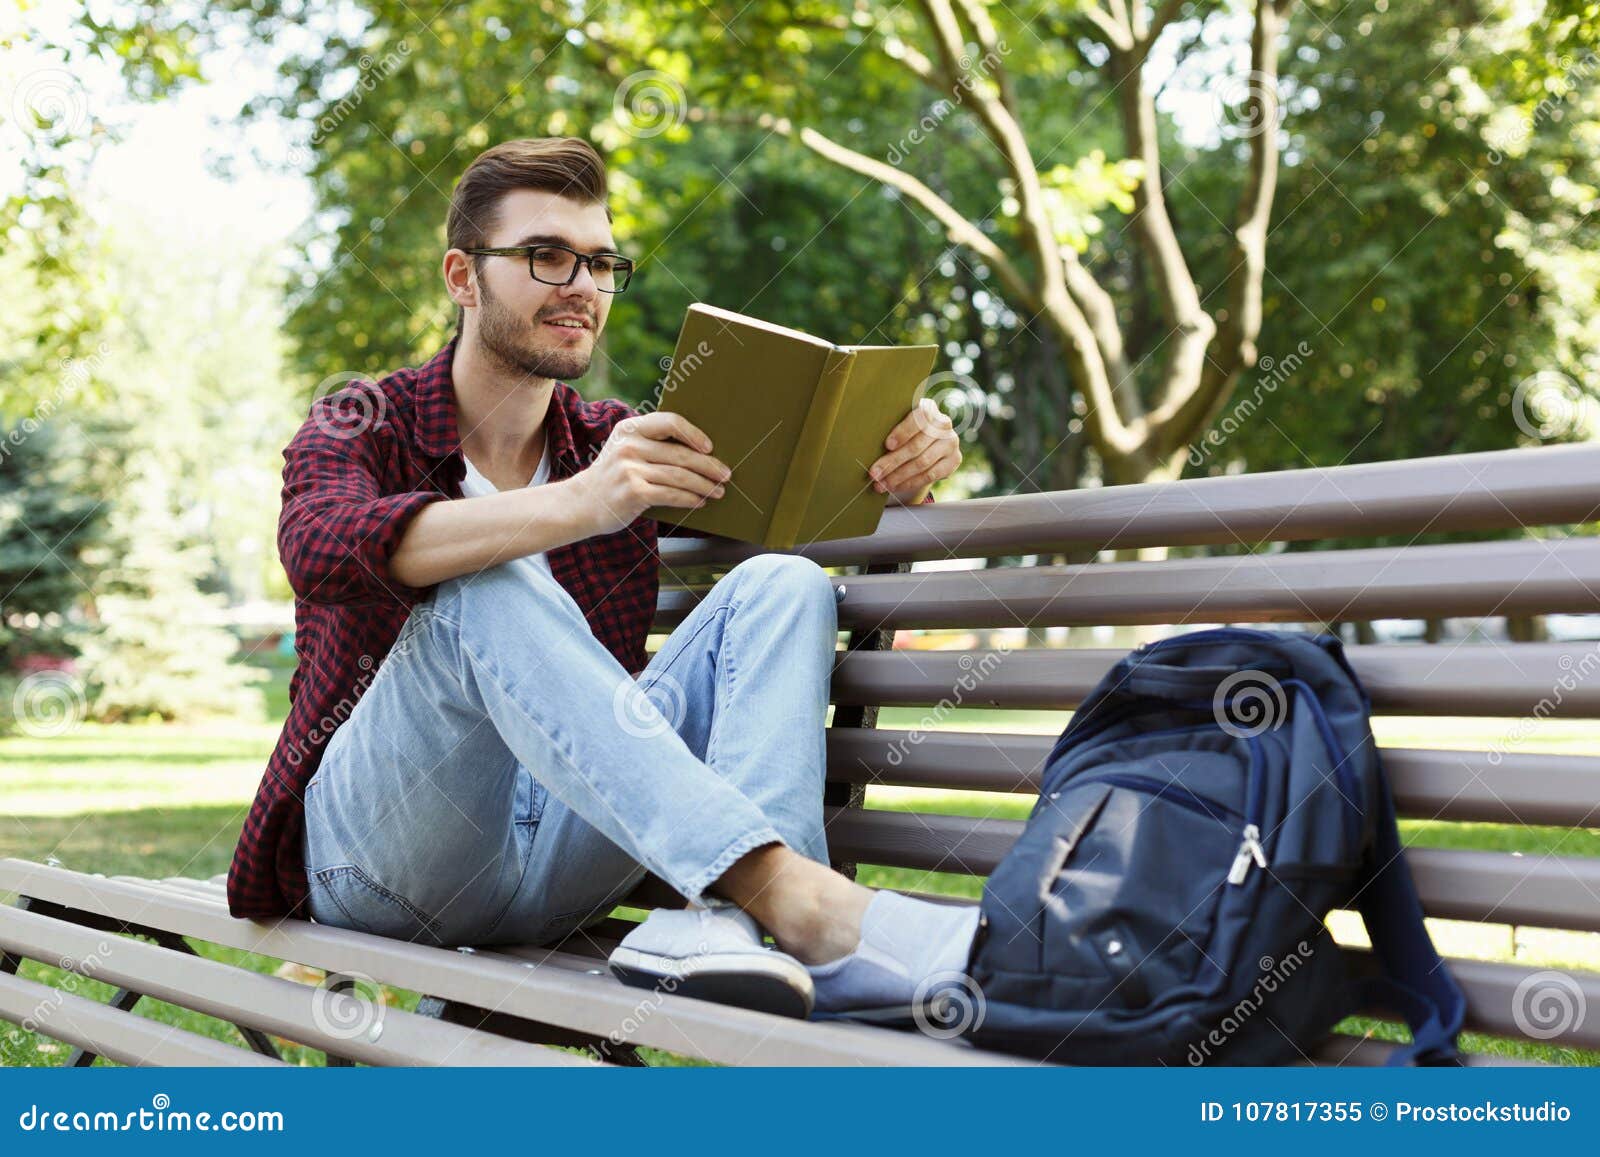 Preparing for reading. Человек читает. Мужчина с книжкой в парке. Парень с книгой в парке. Мужчина улыбается в парке.